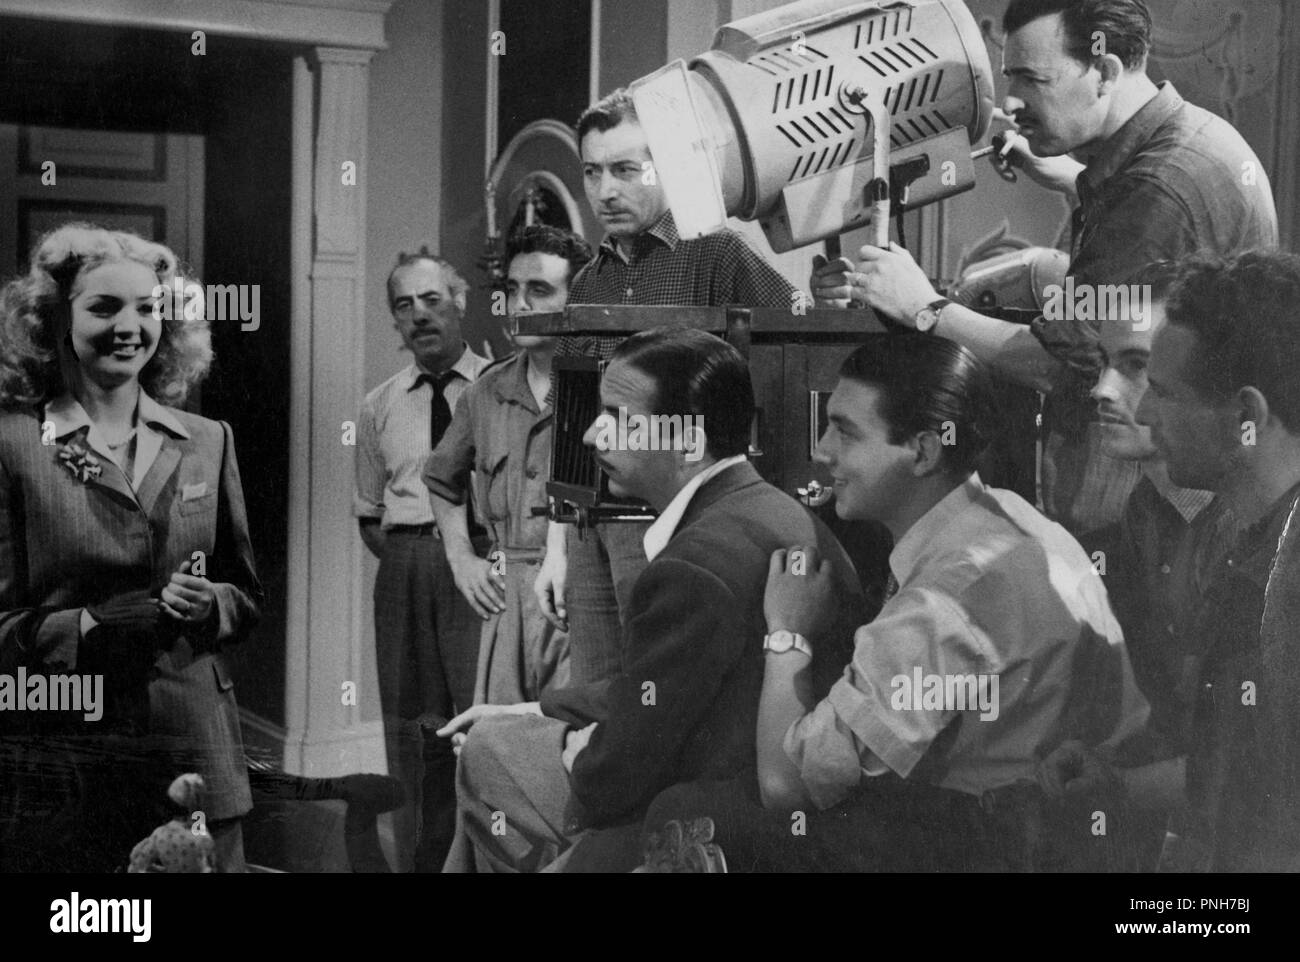 Original film title: SE LE FUE EL NOVIO. English title: SE LE FUE EL NOVIO. Year: 1945. Director: JULIO SALVADOR. Stars: JULIO SALVADOR; SARA MONTIEL. Stock Photo